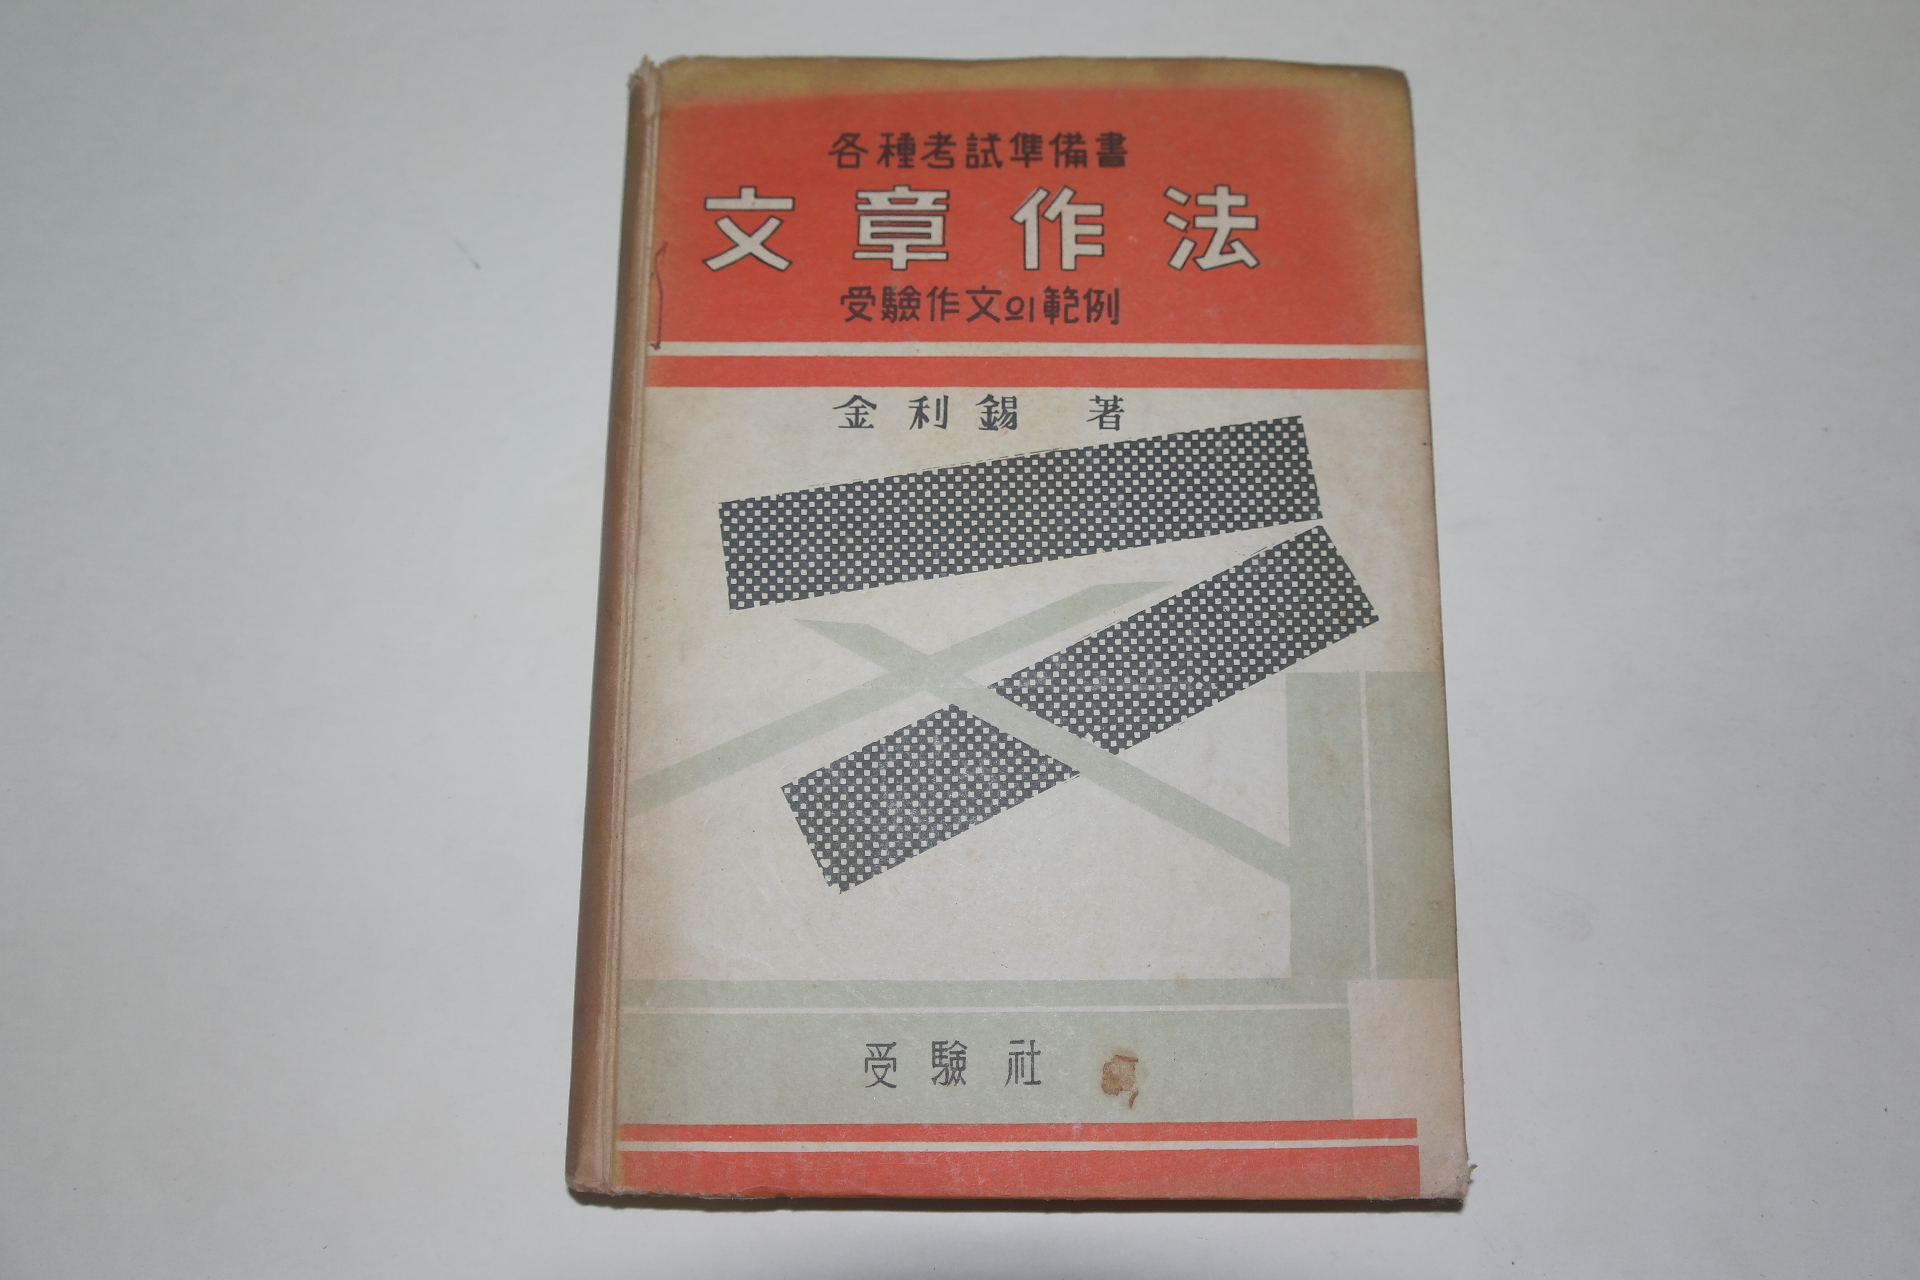 1961년 김리석(金利錫) 문장작법(文章作法)